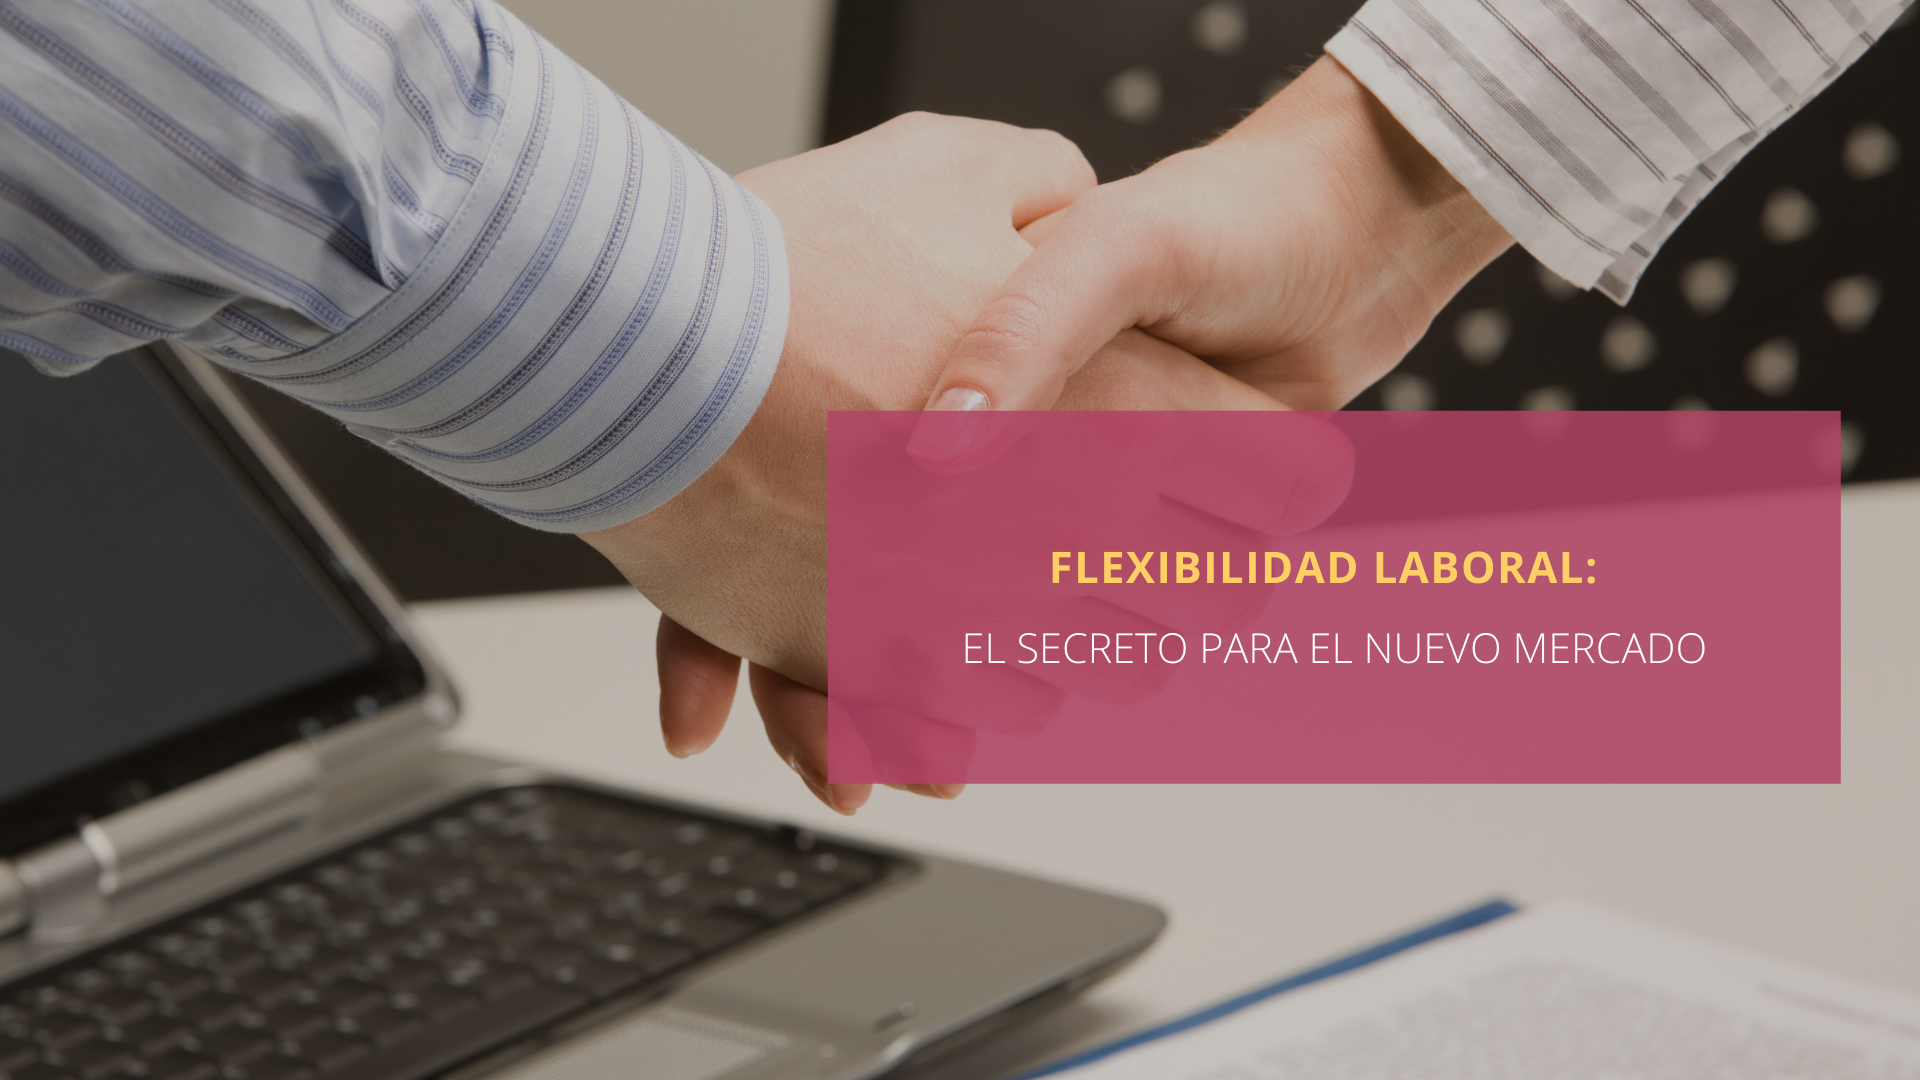 Flexibilidad laboral: el secreto para el nuevo mercado